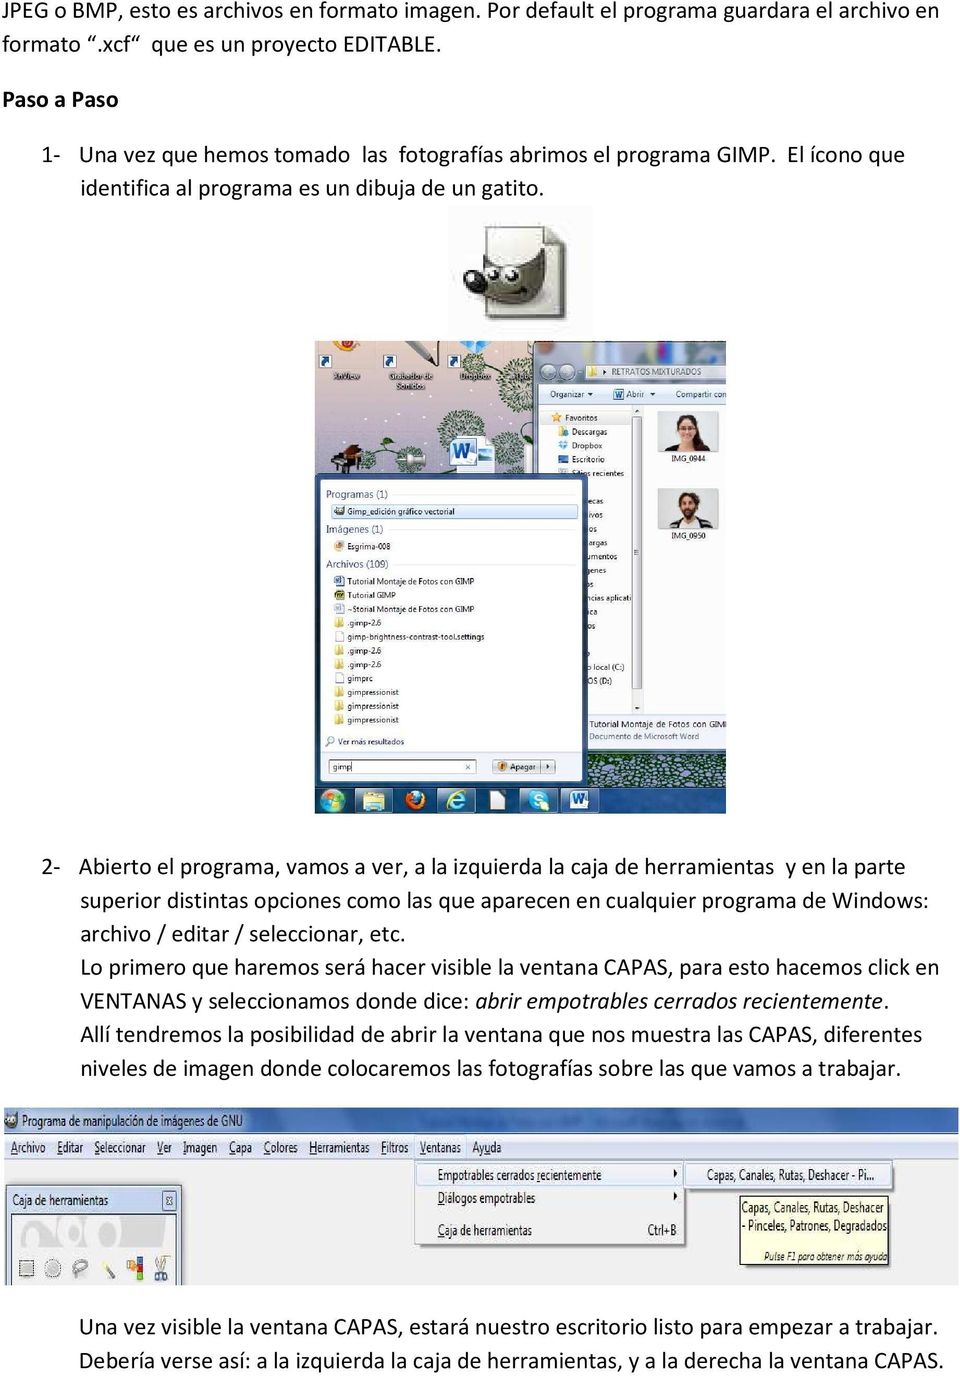 2- Abierto el programa, vamos a ver, a la izquierda la caja de herramientas y en la parte superior distintas opciones como las que aparecen en cualquier programa de Windows: archivo / editar /